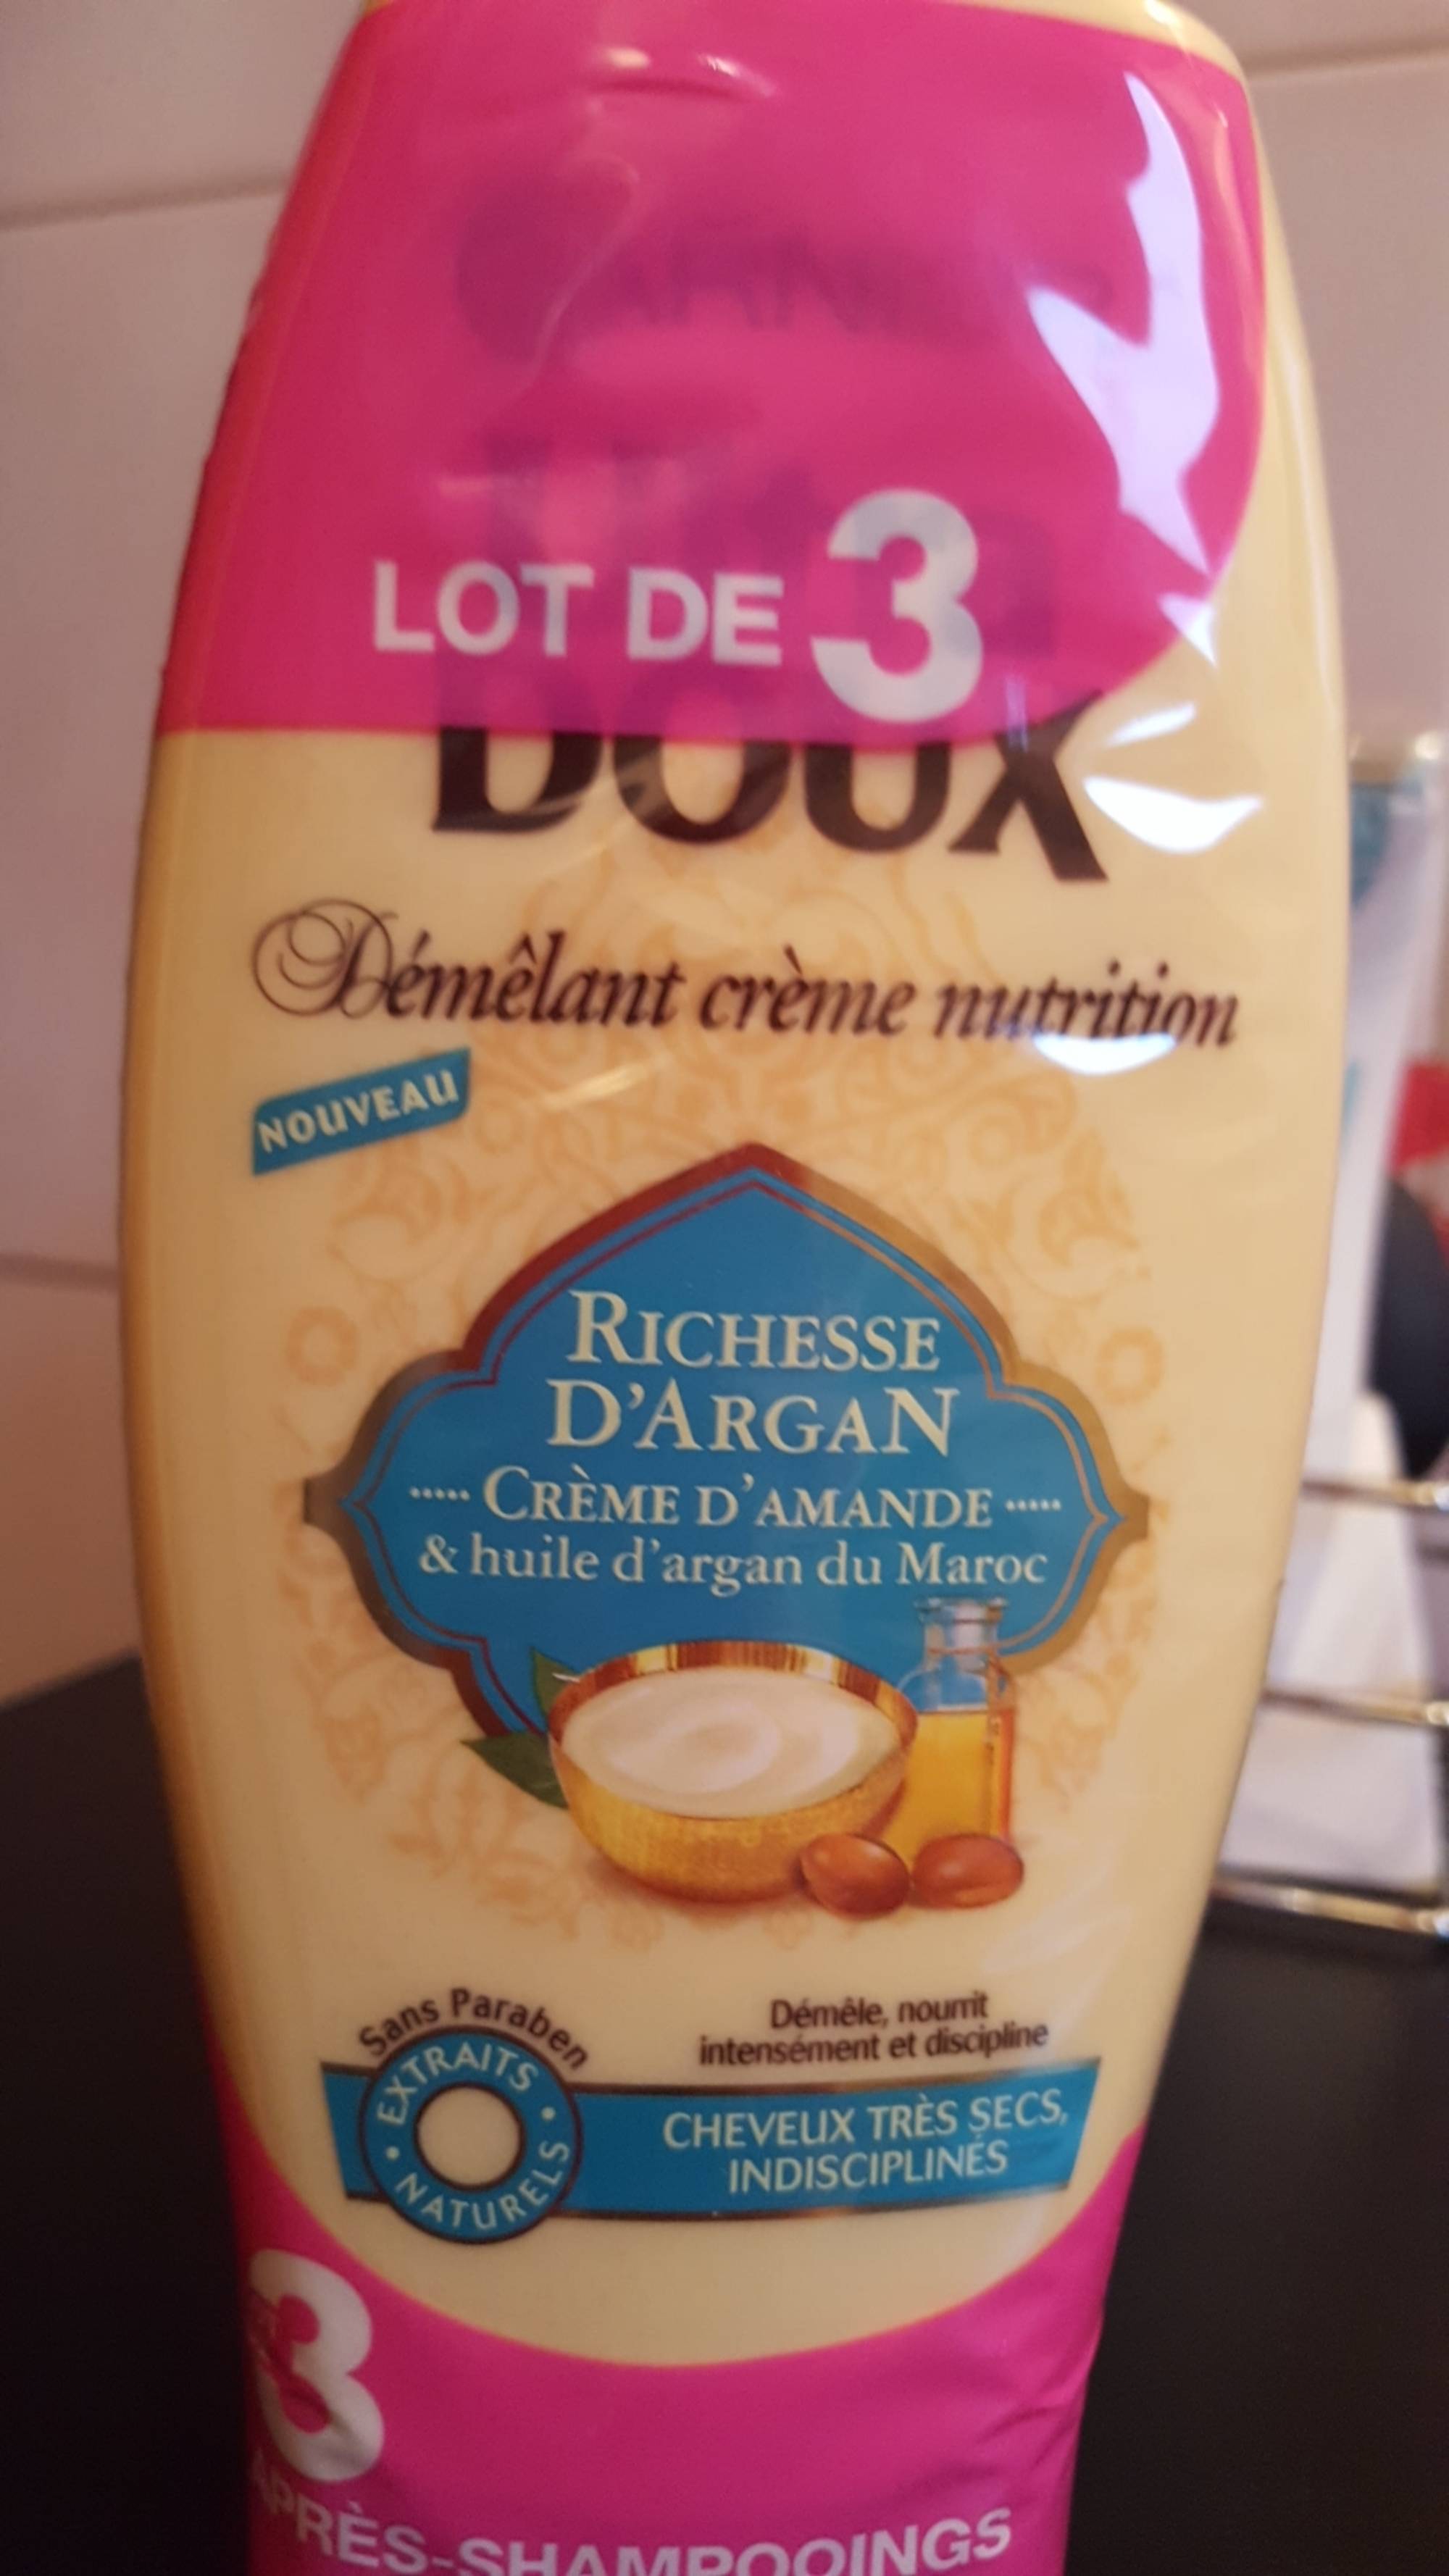 GARNIER - Ultra doux richesse d'argan - Démêlant crème nutrition